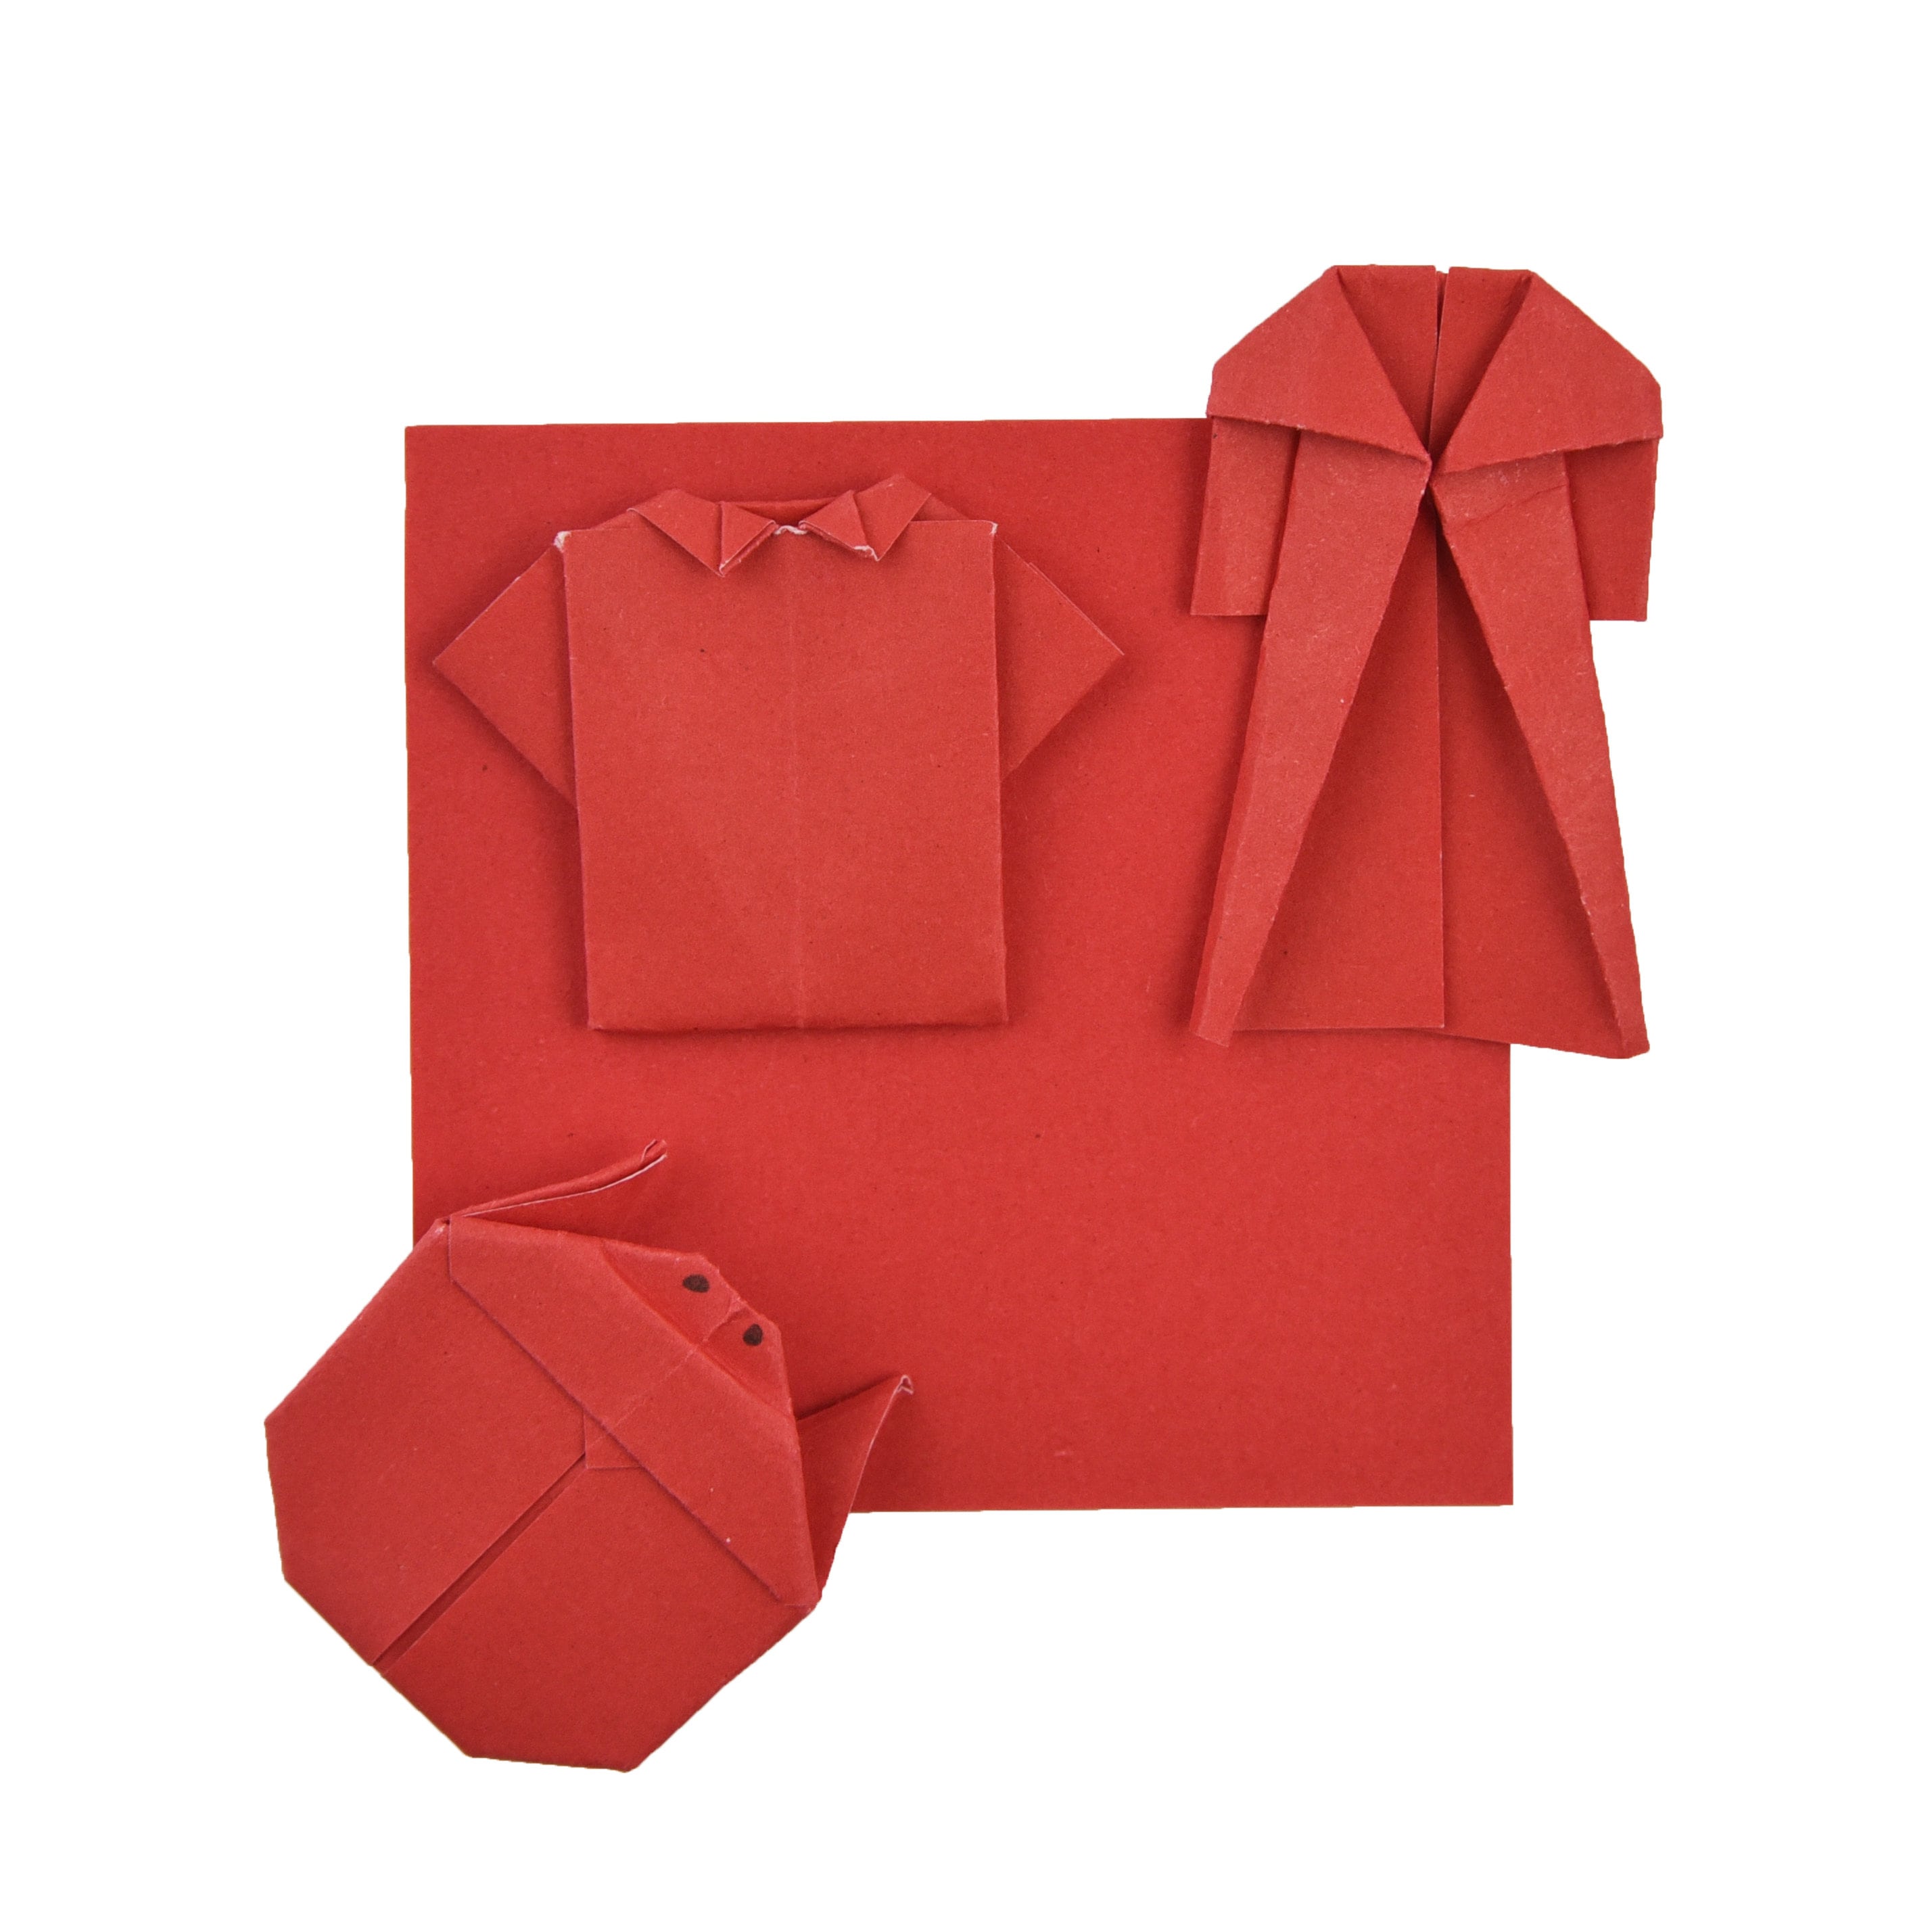 100 fogli di carta origami rossi - 3x3 pollici - Confezione di carta quadrata per piegare, gru origami e decorazioni - S16